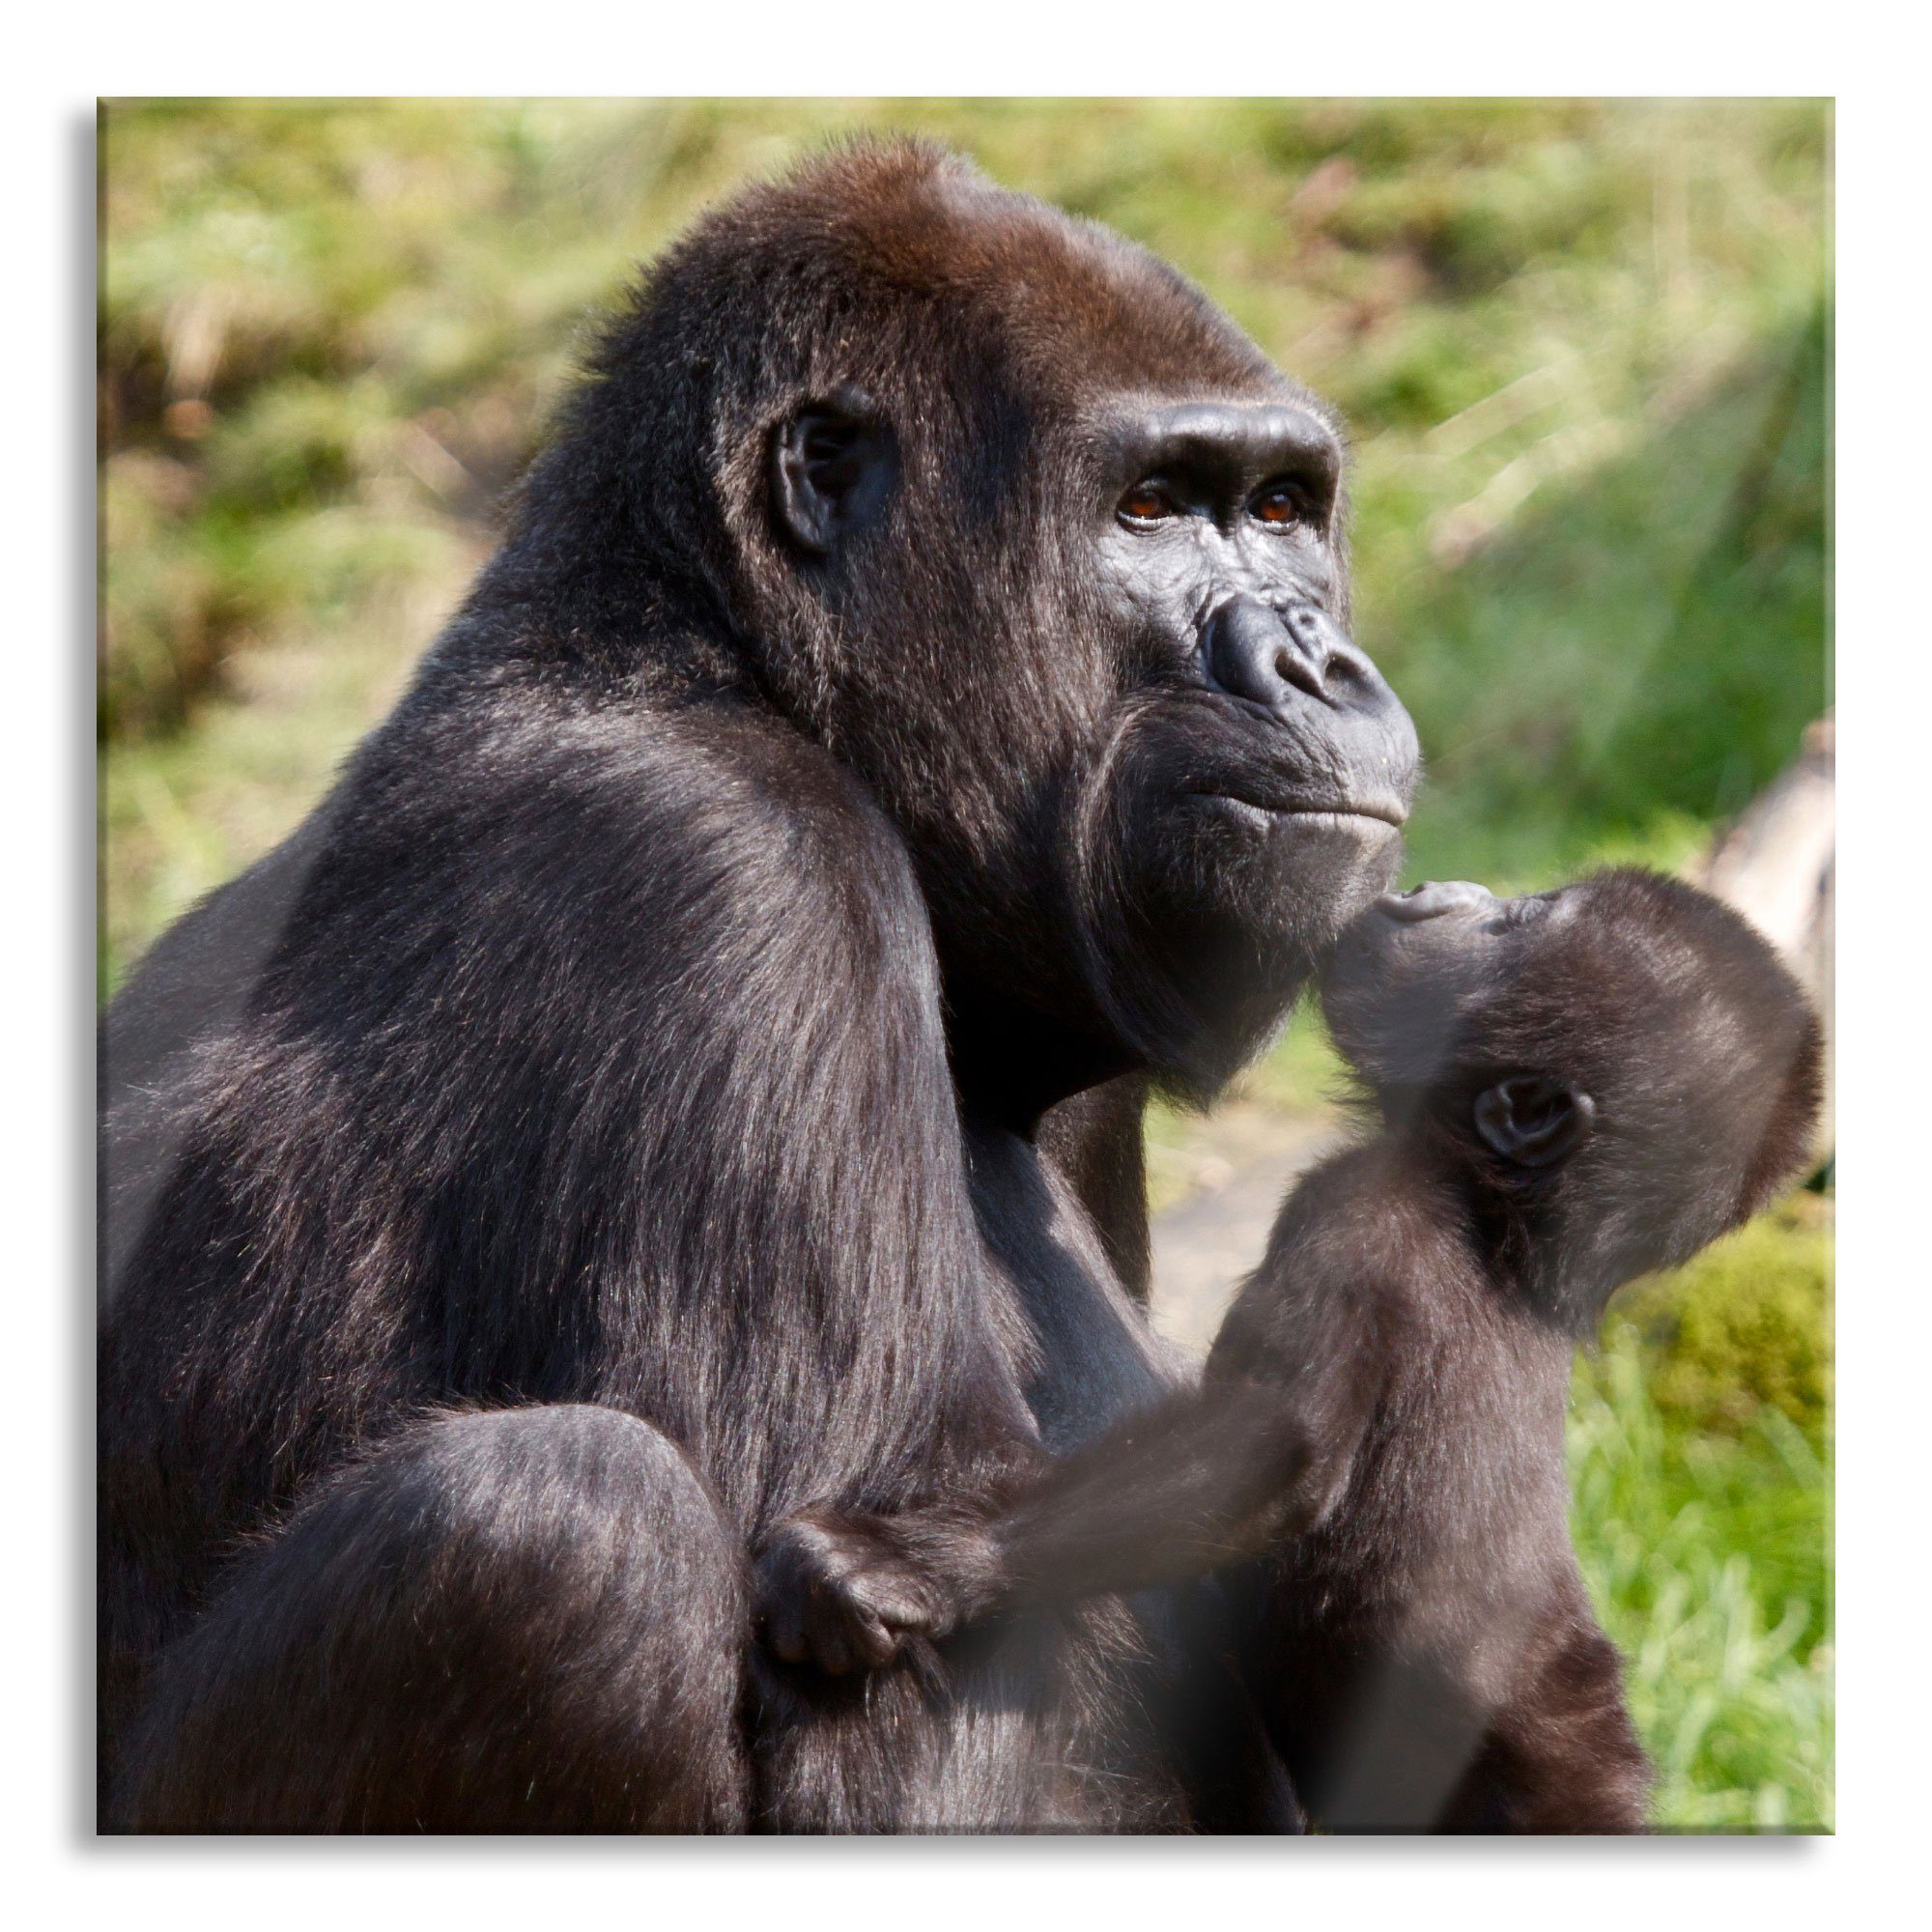 Pixxprint Glasbild Gorilla-Baby küsst seine Mutter, Gorilla-Baby küsst seine Mutter (1 St), Glasbild aus Echtglas, inkl. Aufhängungen und Abstandshalter